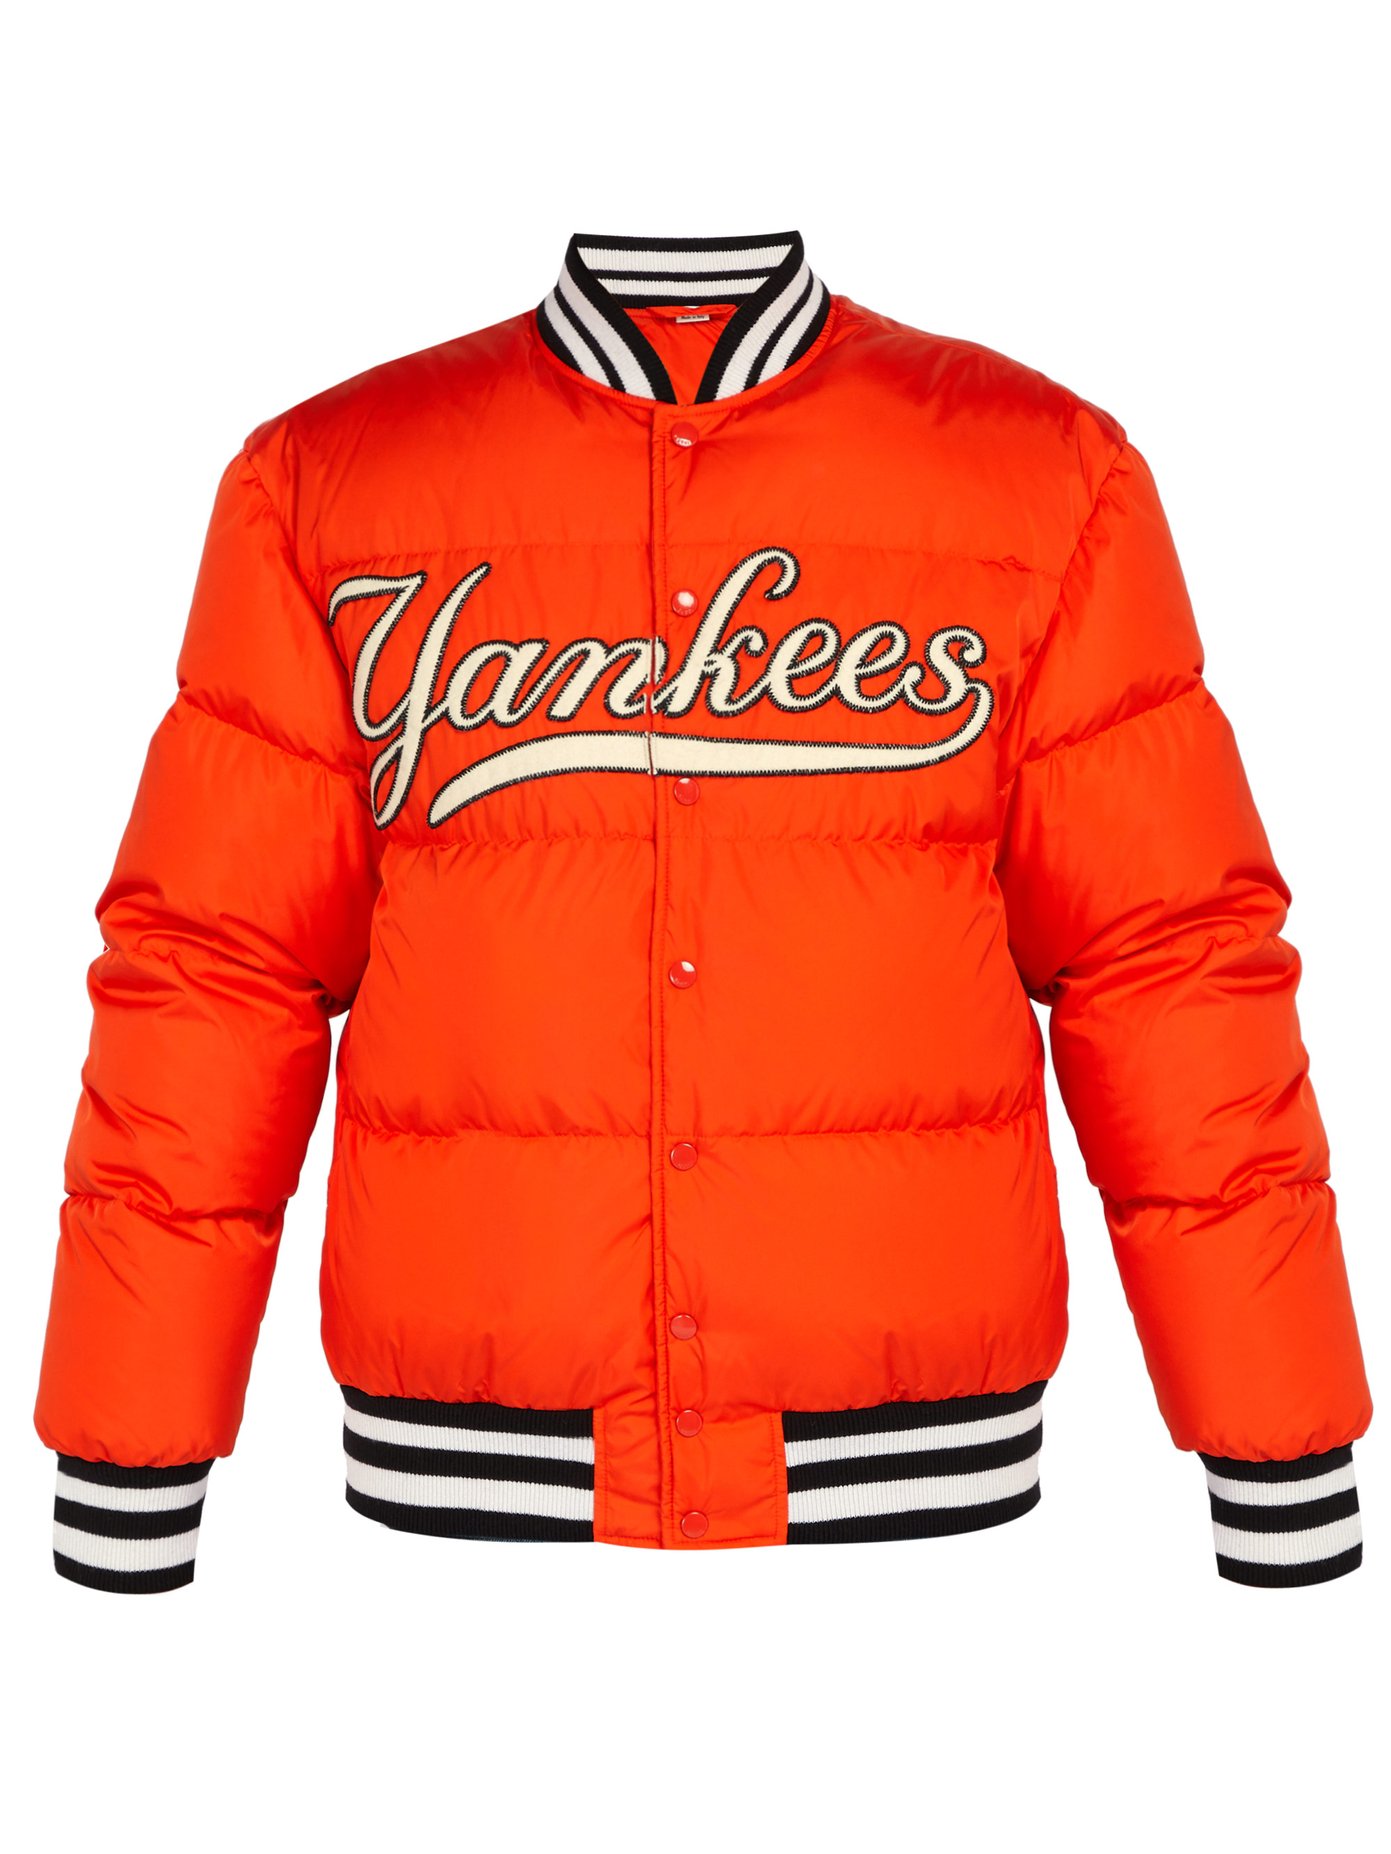 ny yankees jackets sale